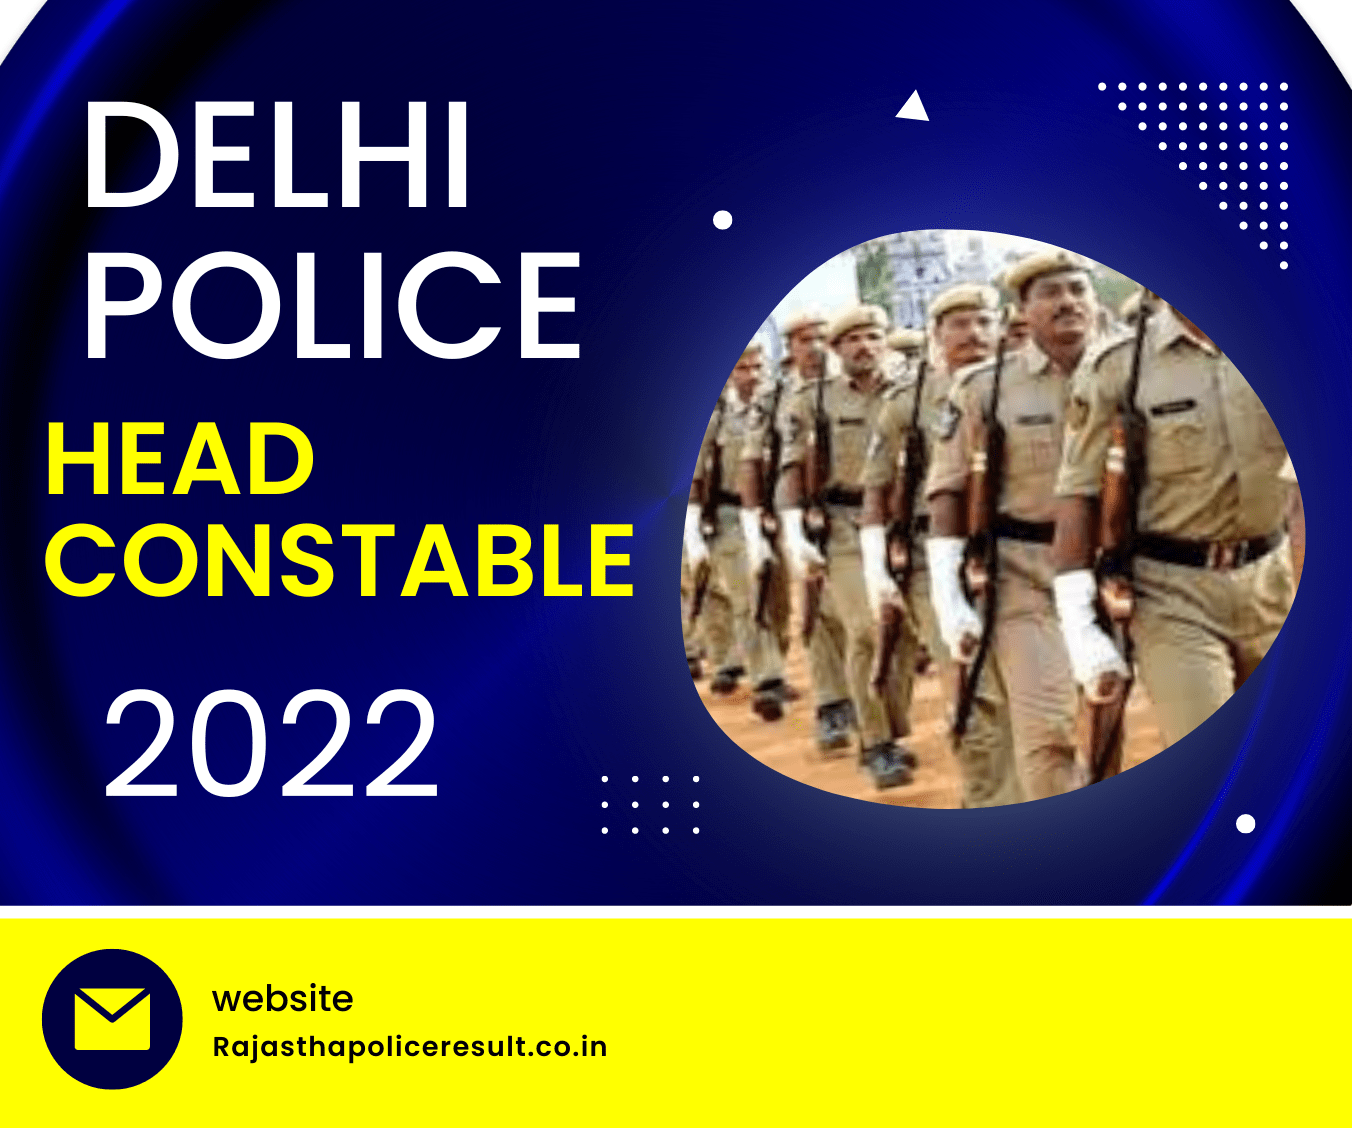 DELHI POLICE HEAD CONSTABLE 